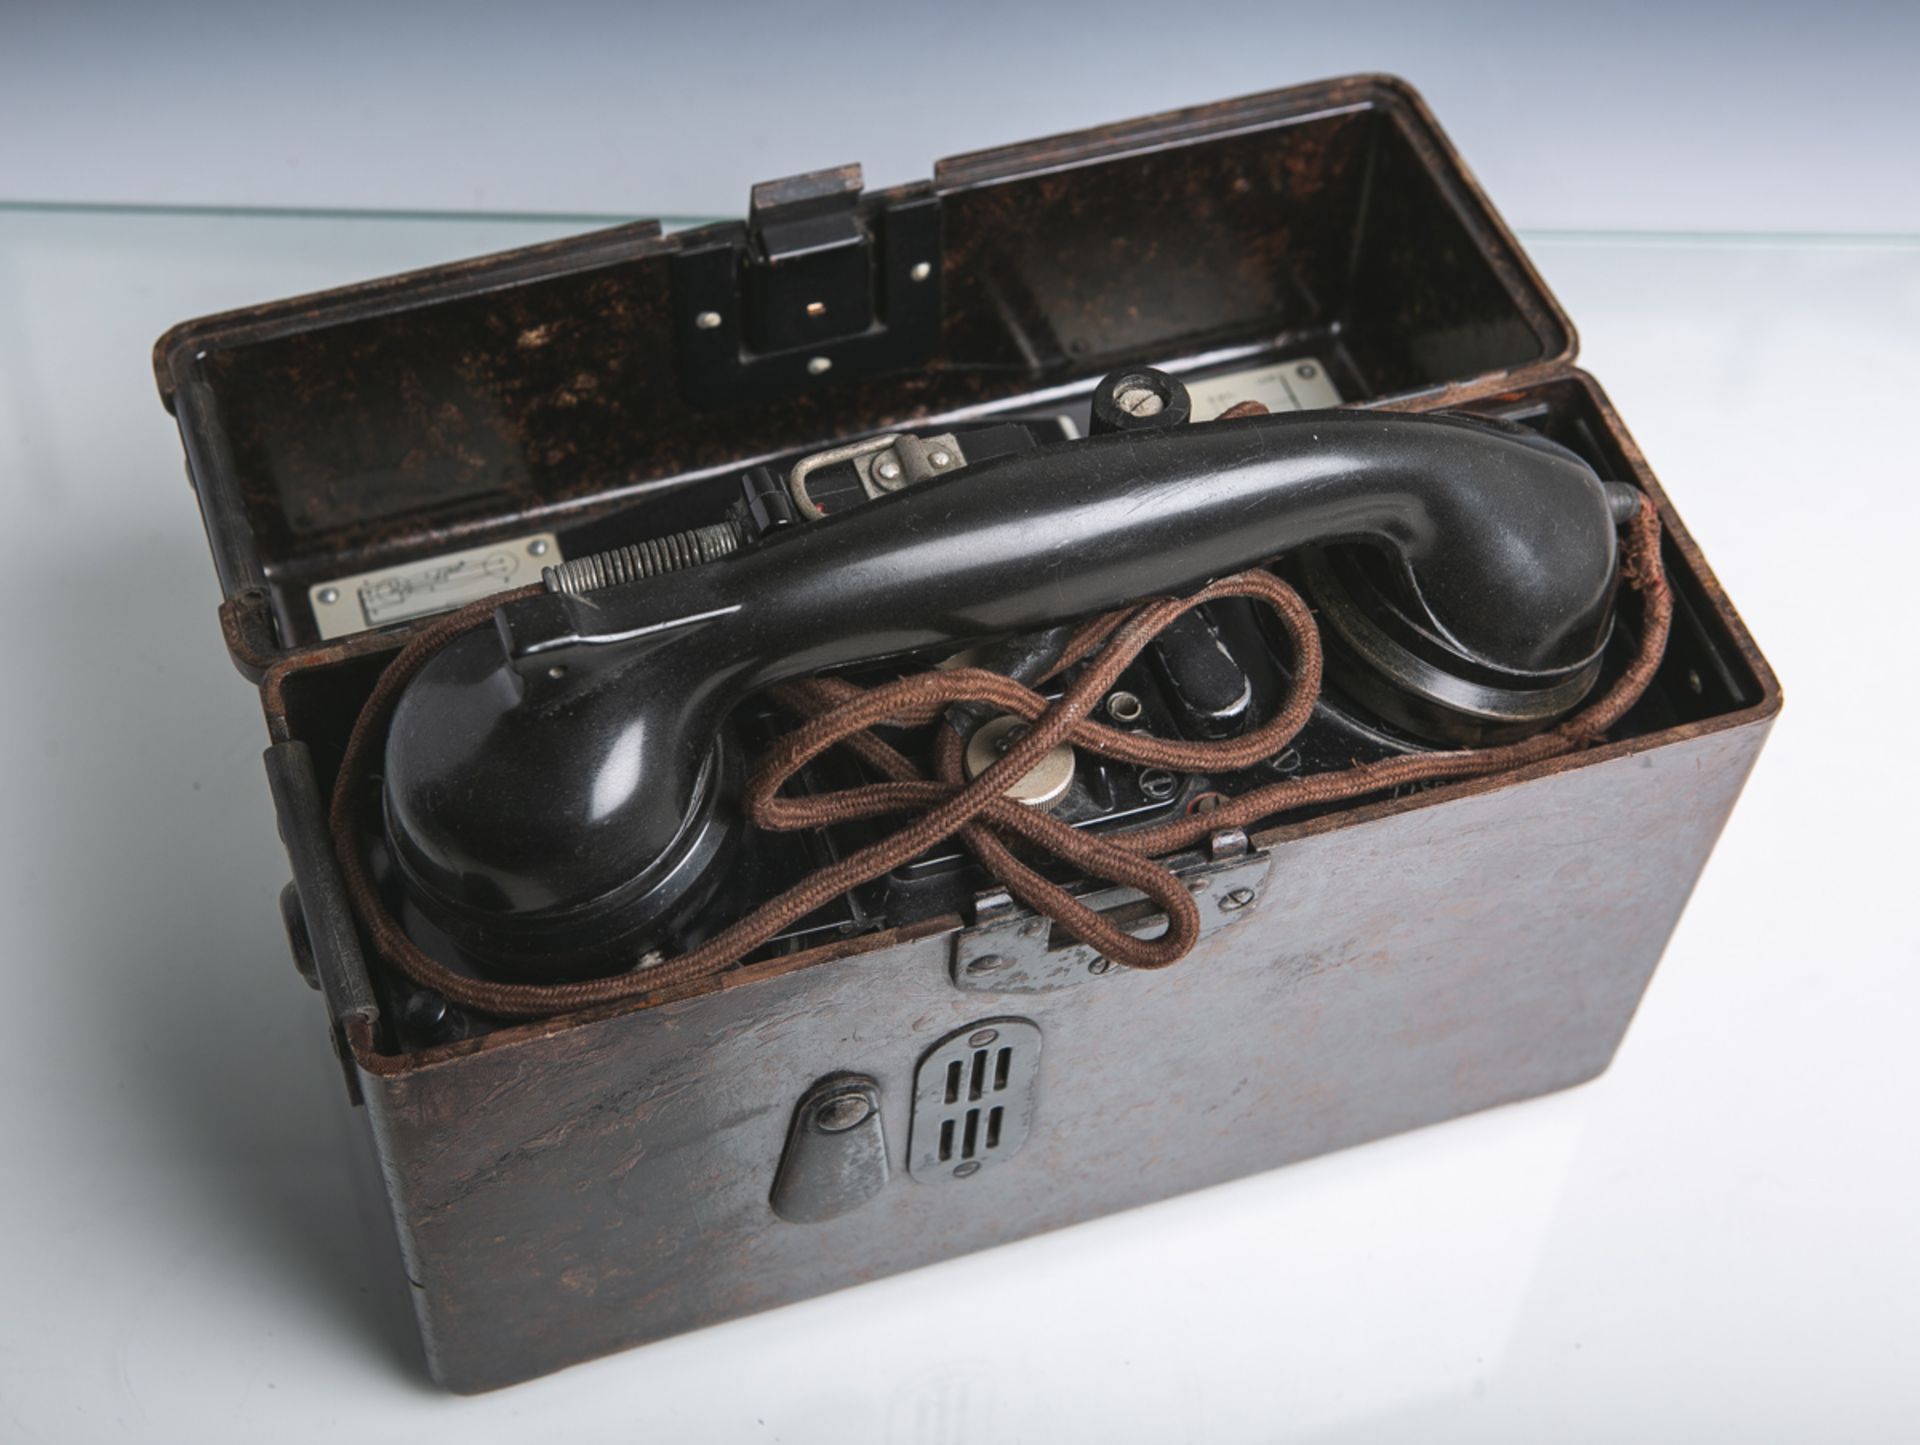 Feldtelefon der Deutschen Wehrmacht (von 1940), seitl. Bez. "B-F5a-91".